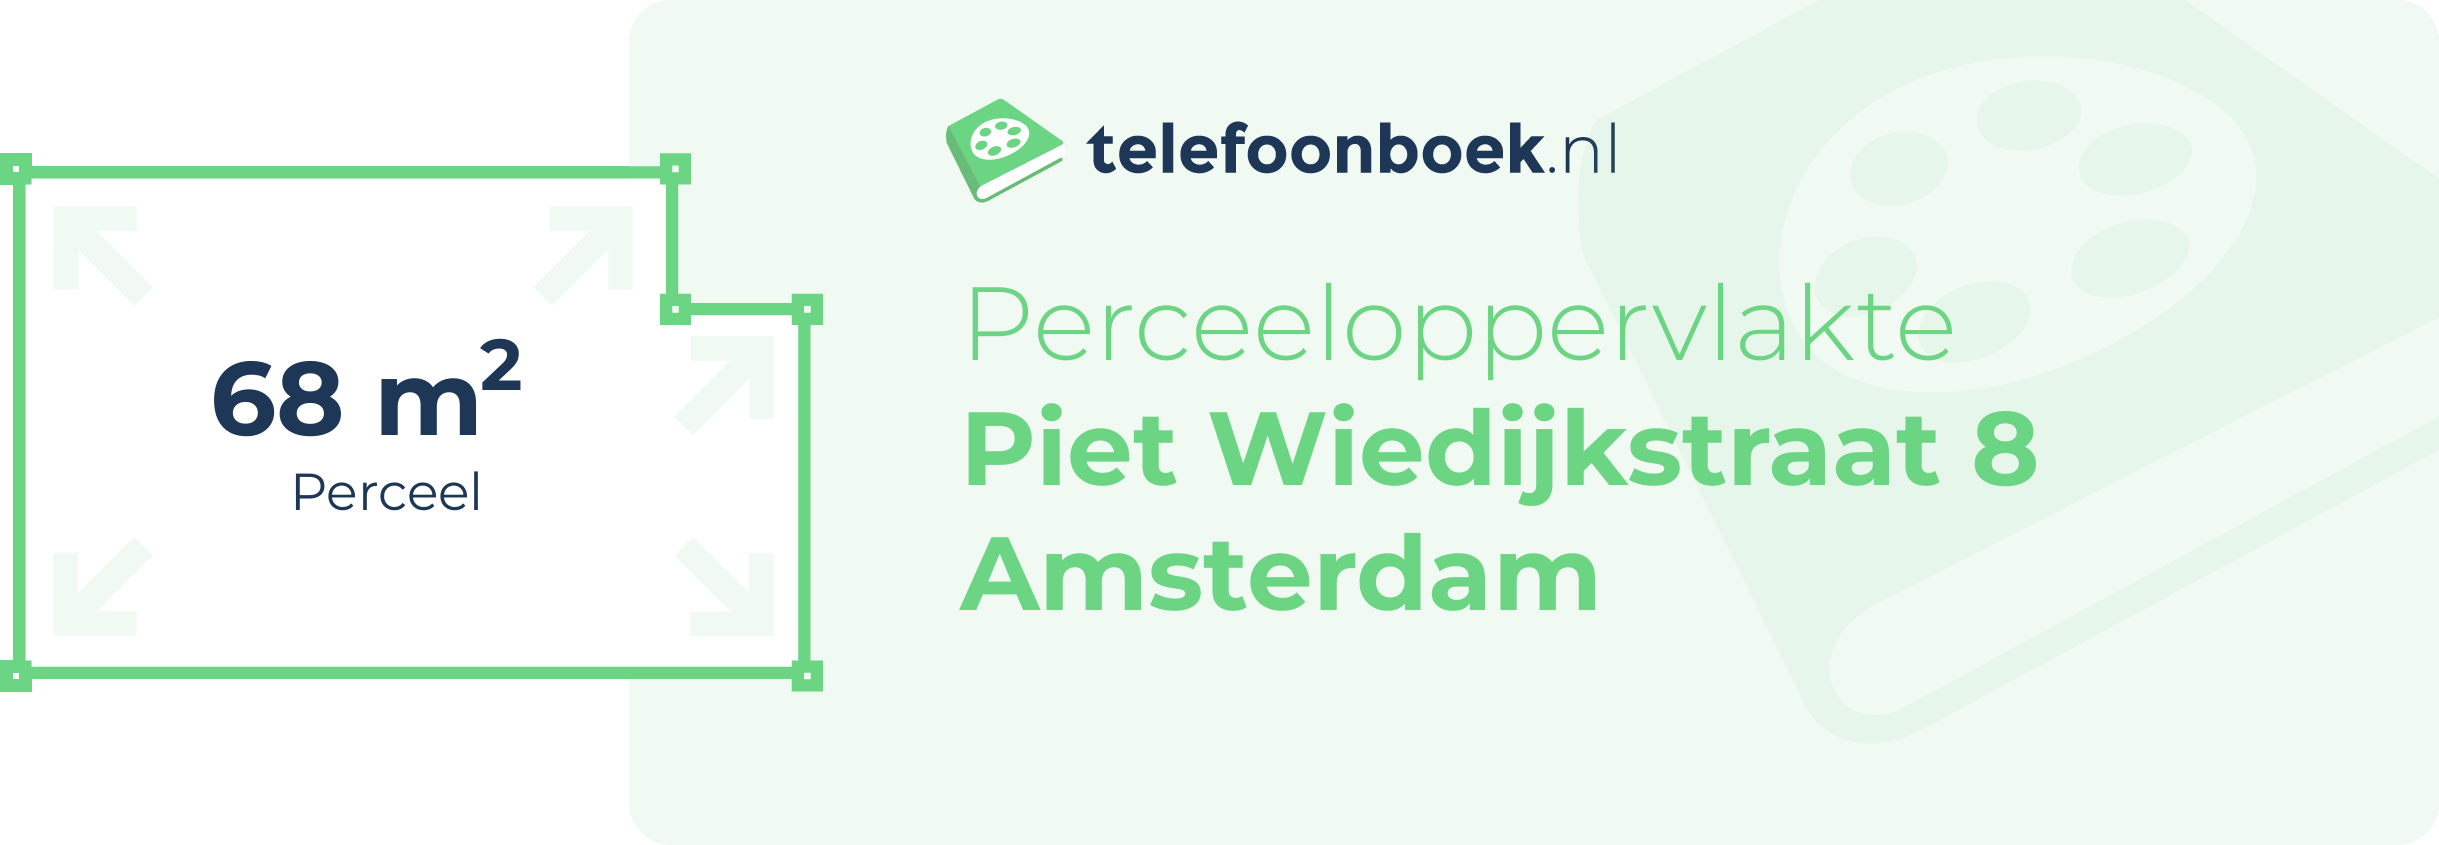 Perceeloppervlakte Piet Wiedijkstraat 8 Amsterdam